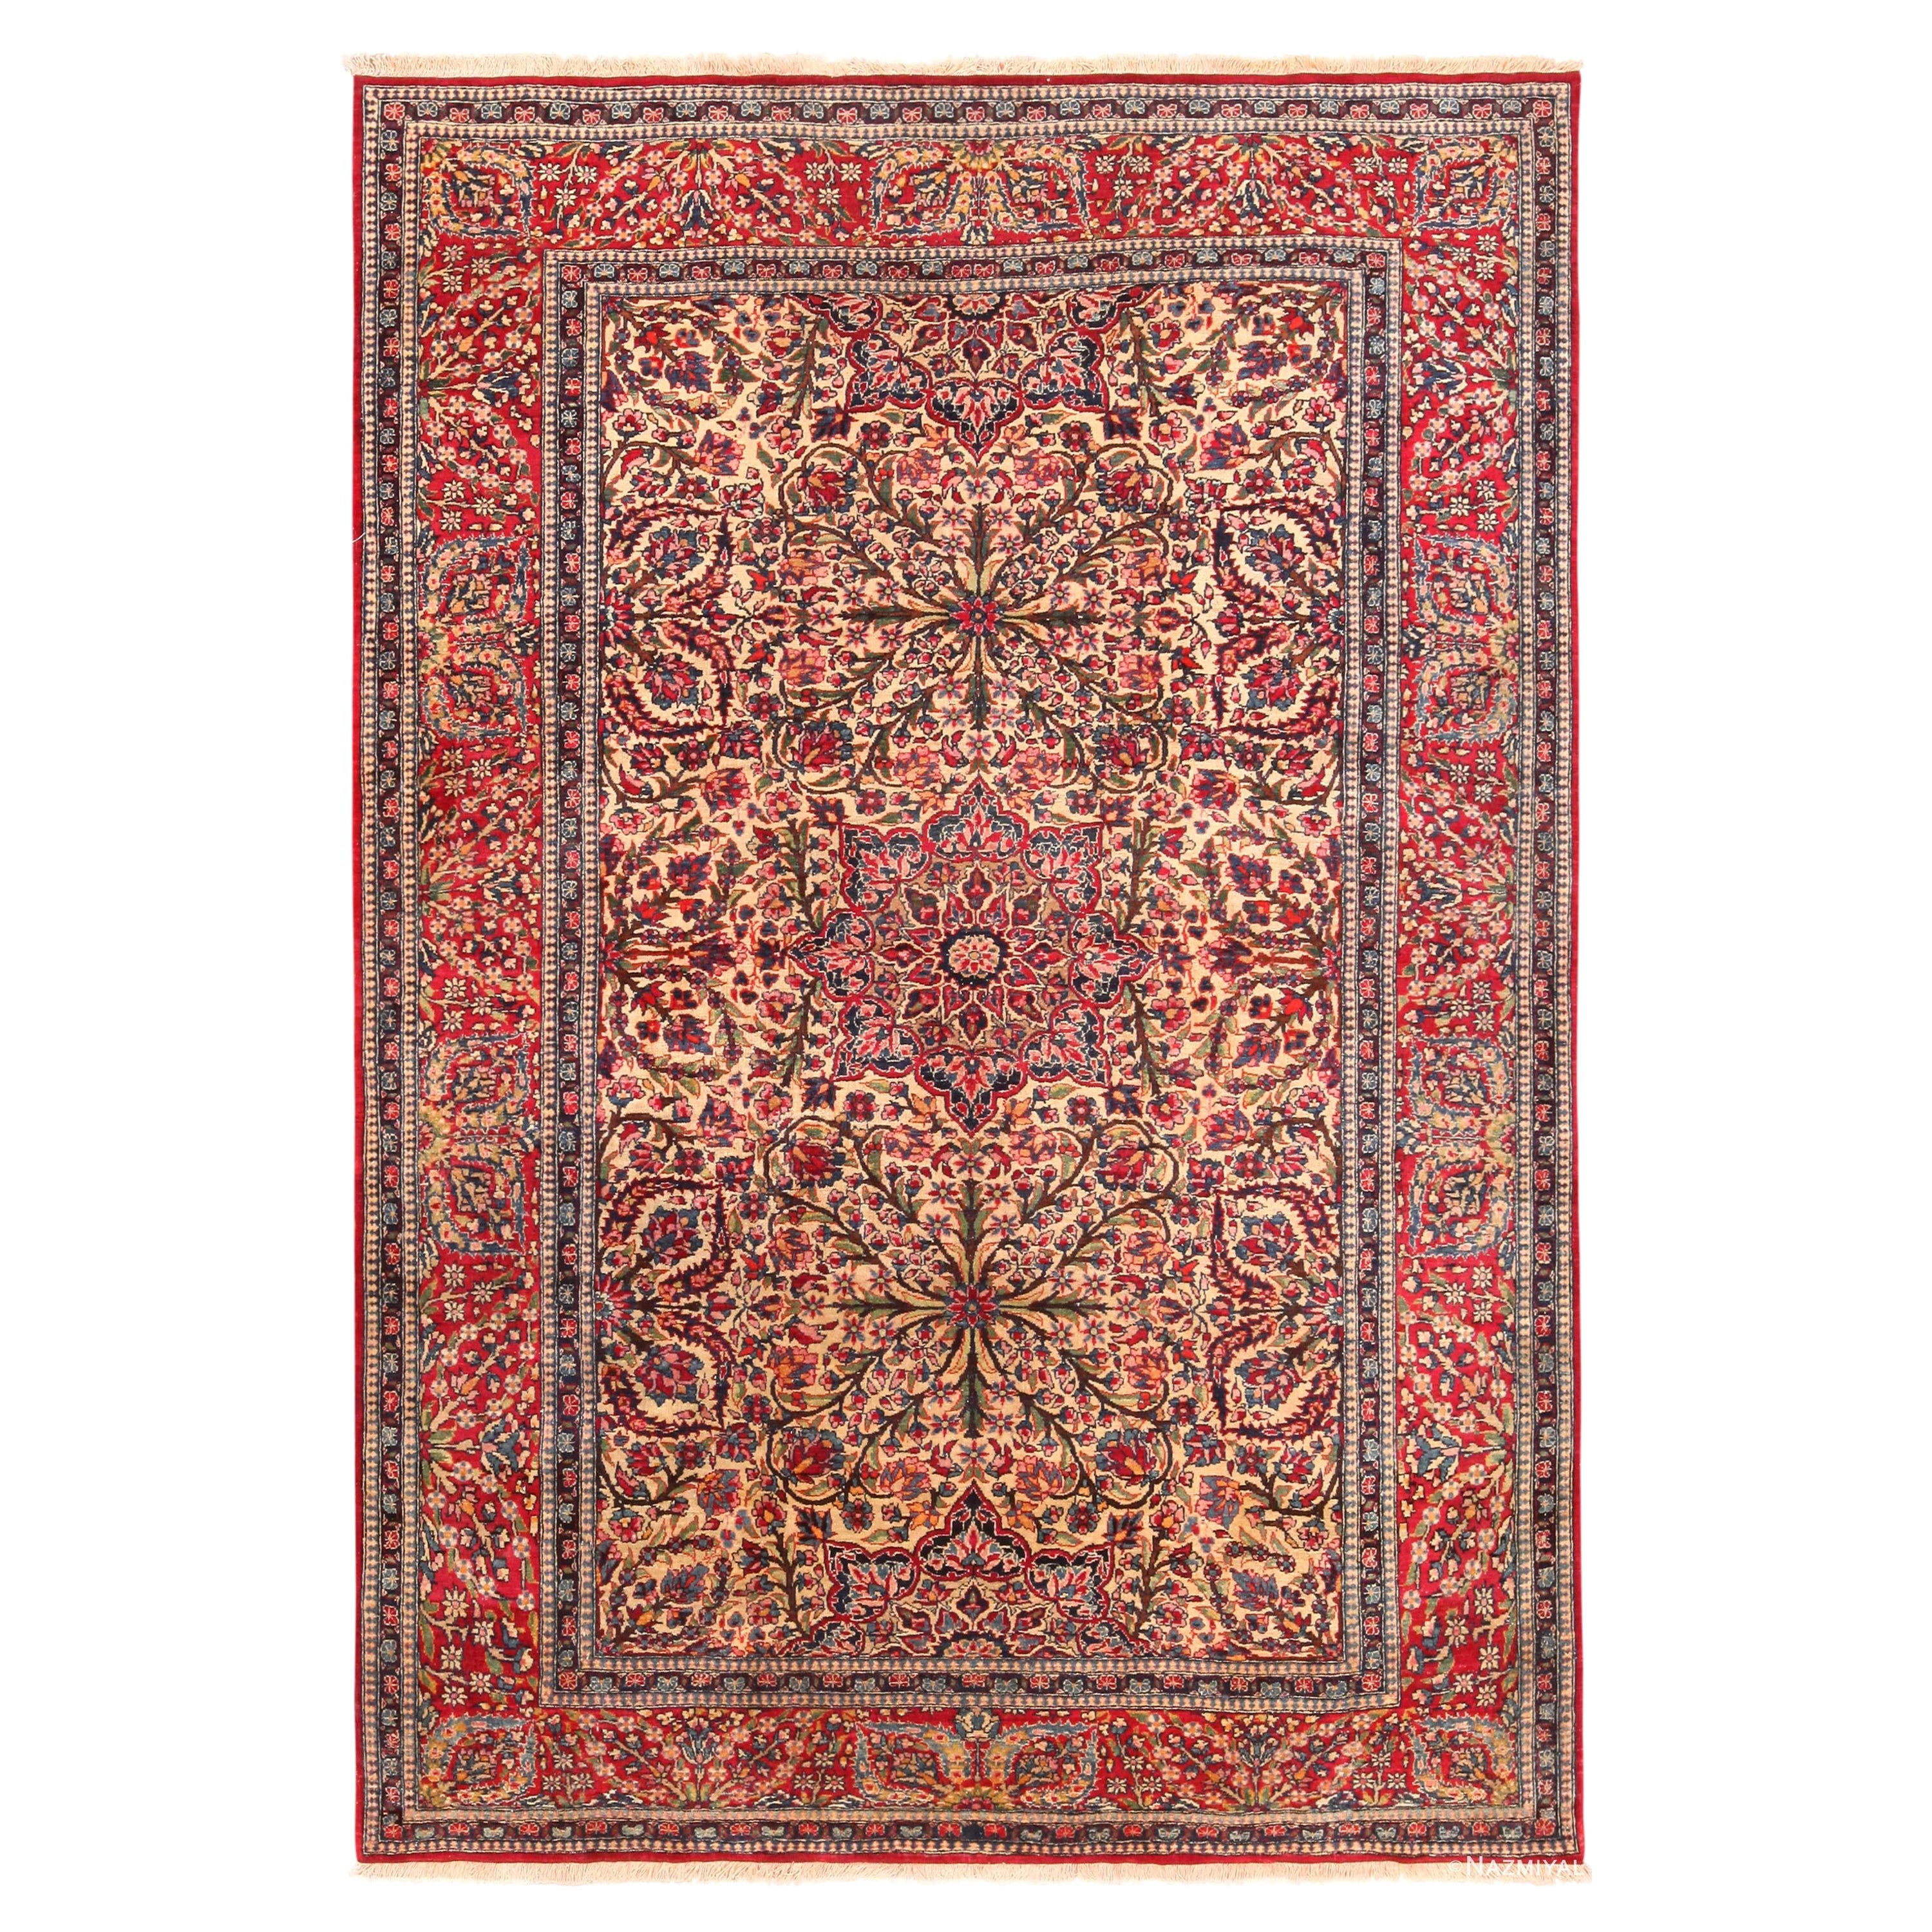 Antiker persischer Isfahan-Teppich. Größe 4 ft 6 in x 6 ft 8 in